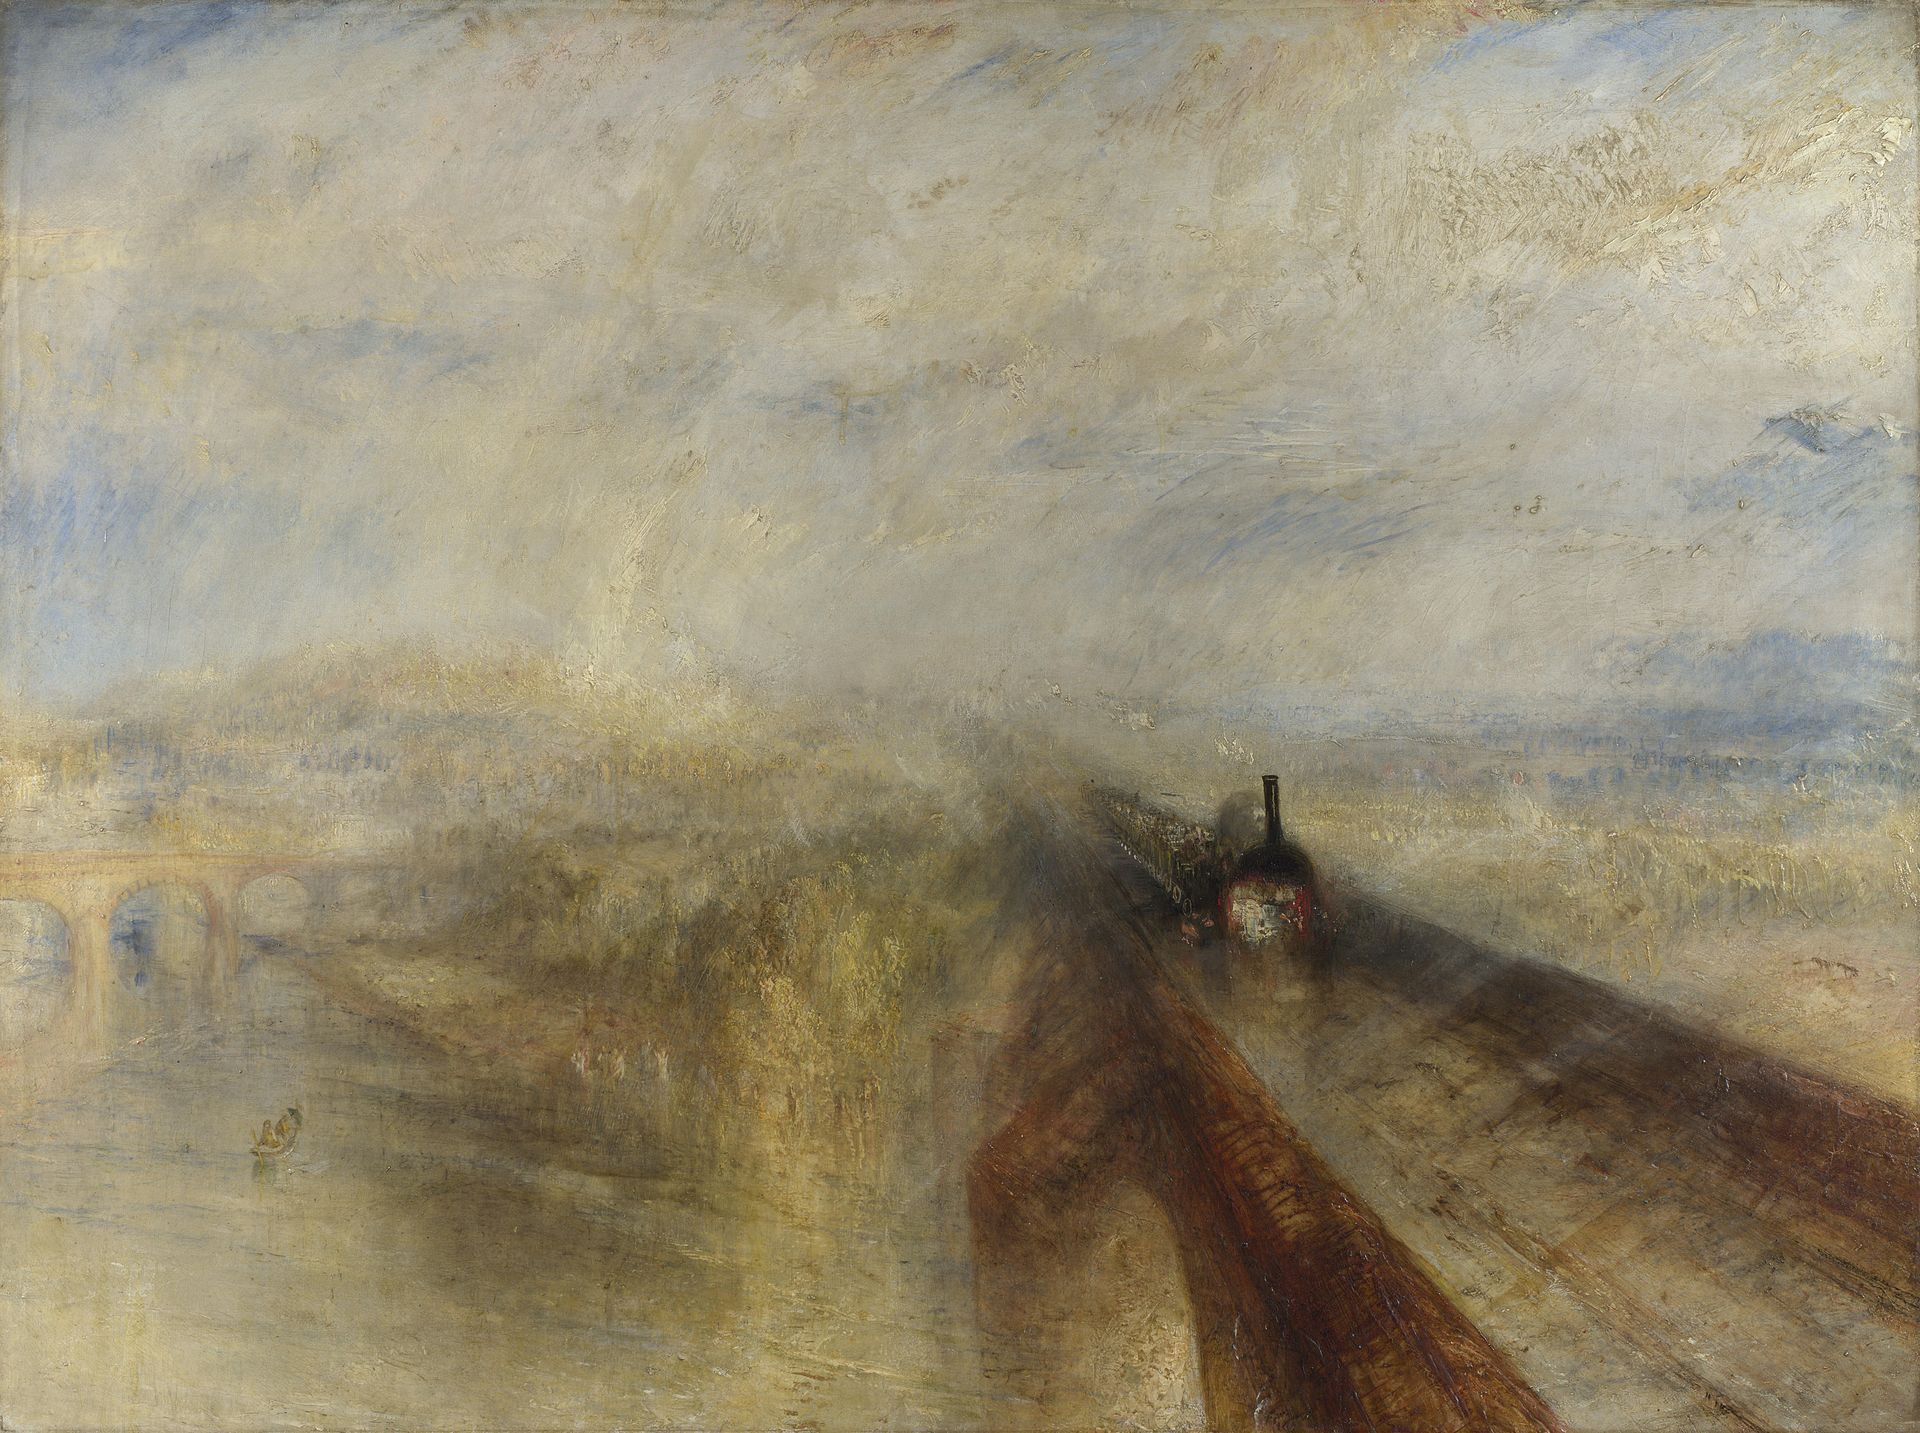 Βροχή, Ατμός και Ταχυτητα - Ο Μεγάλος Δυτικός Σιδηρόδρομος by Joseph Mallord William Turner - 1844 - 91 x 121.8 cm 